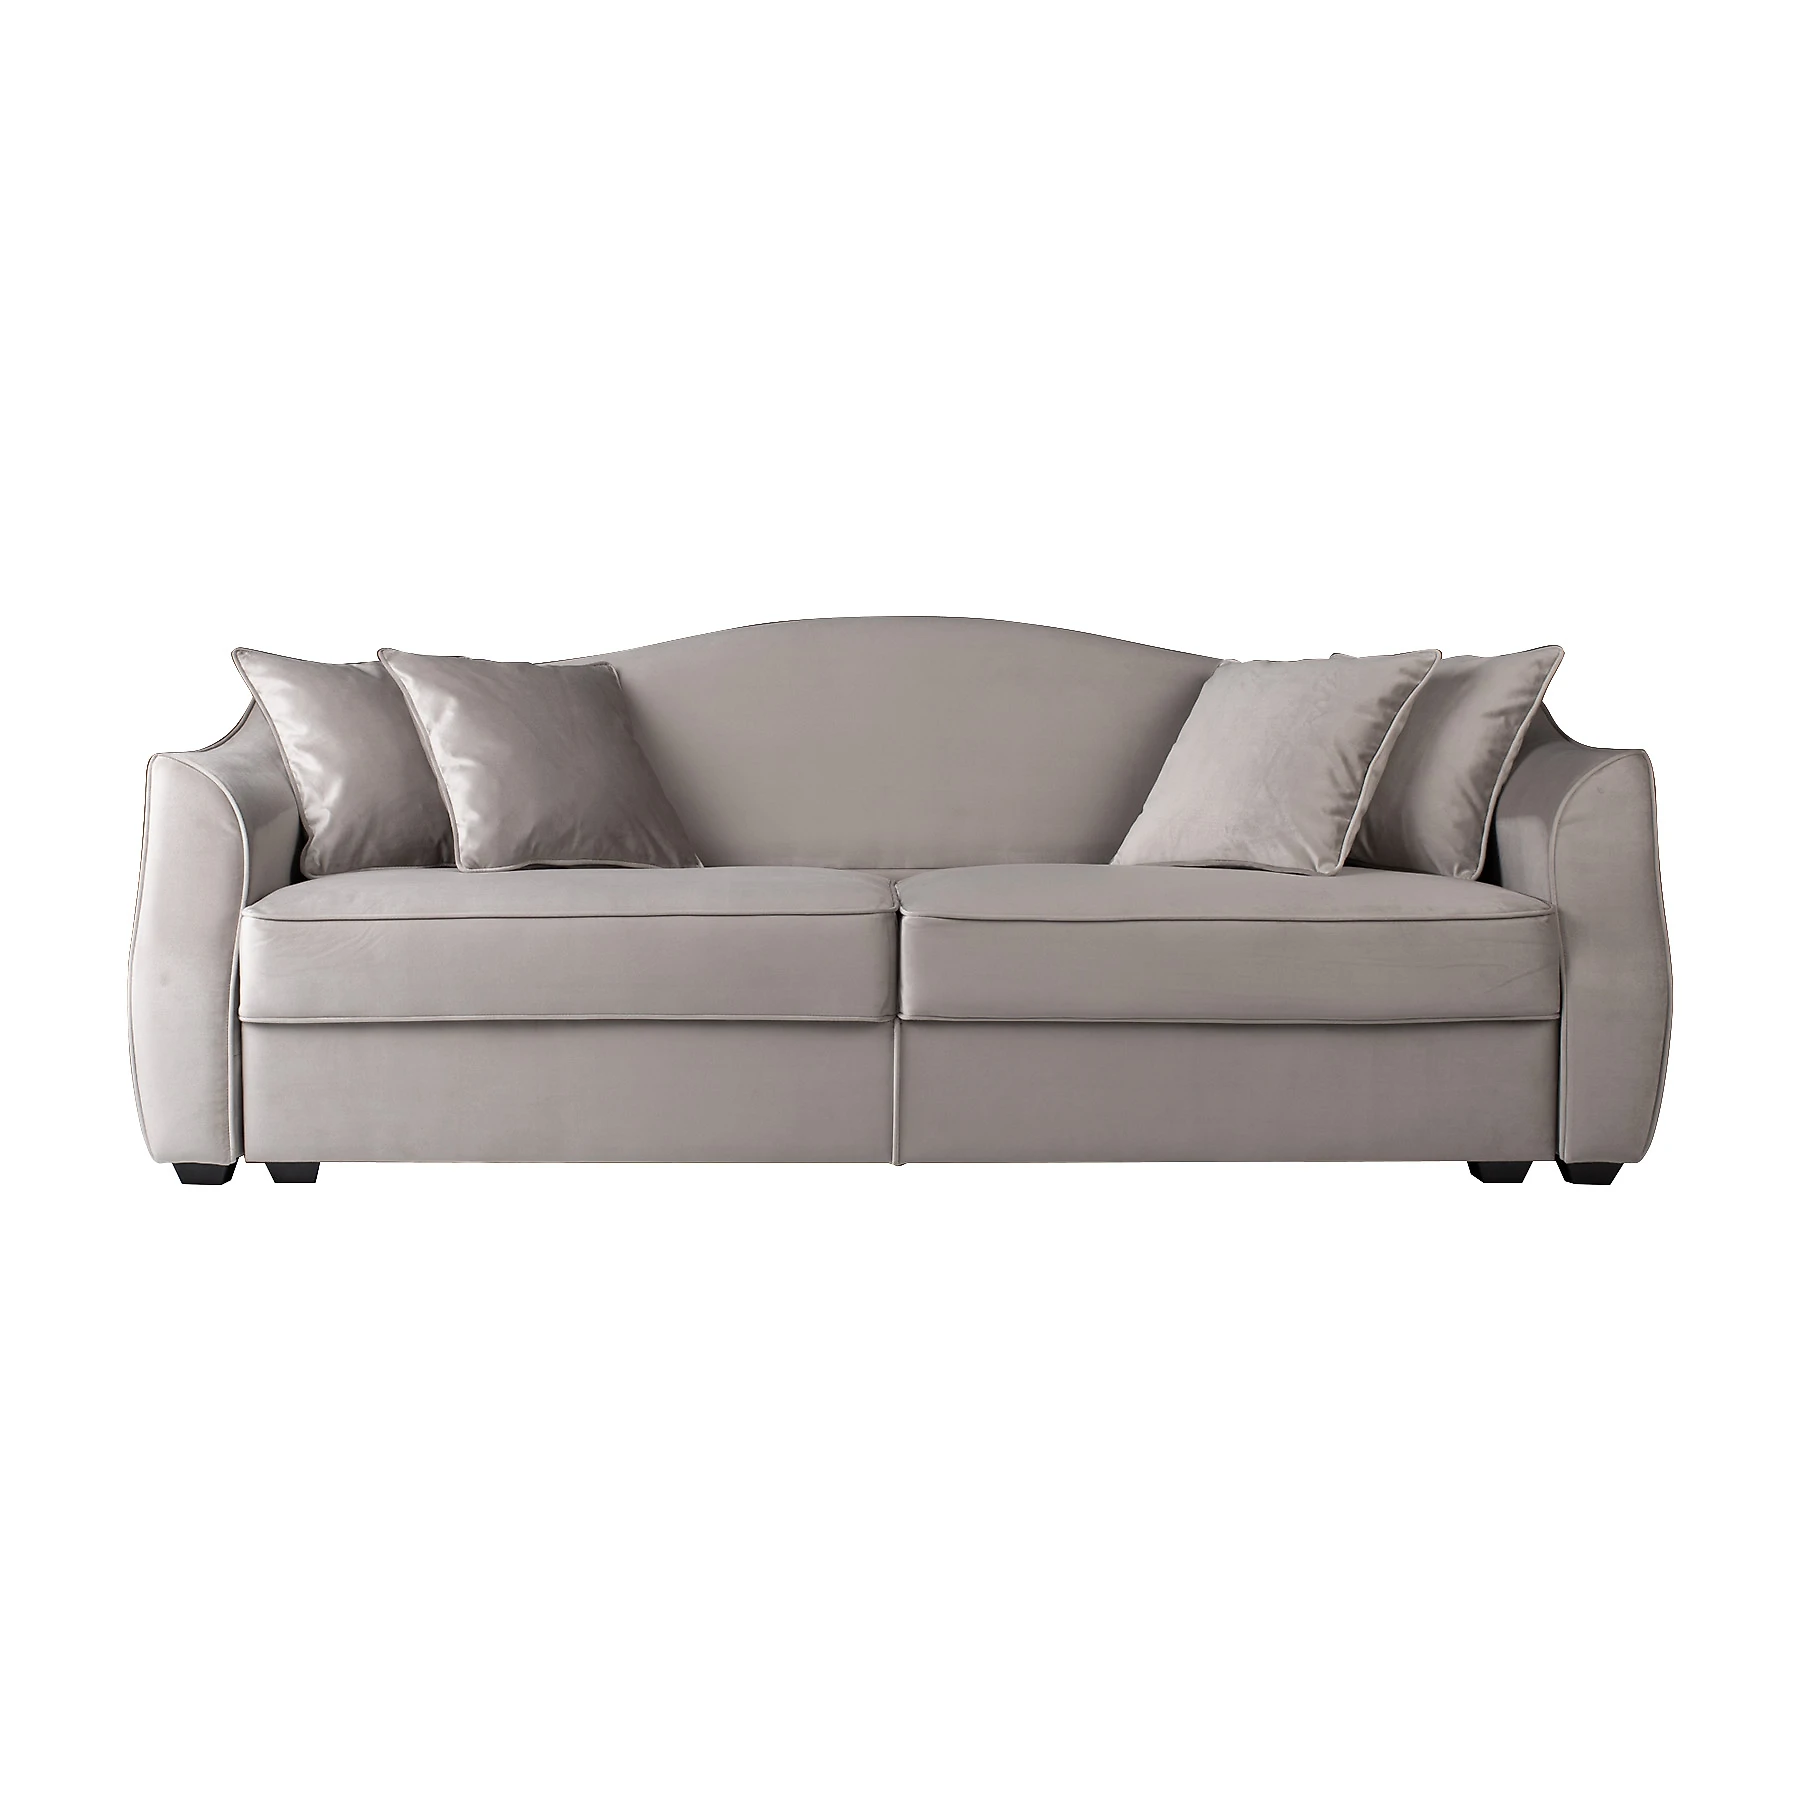 Современный диван Hermes-B 0124,2,2